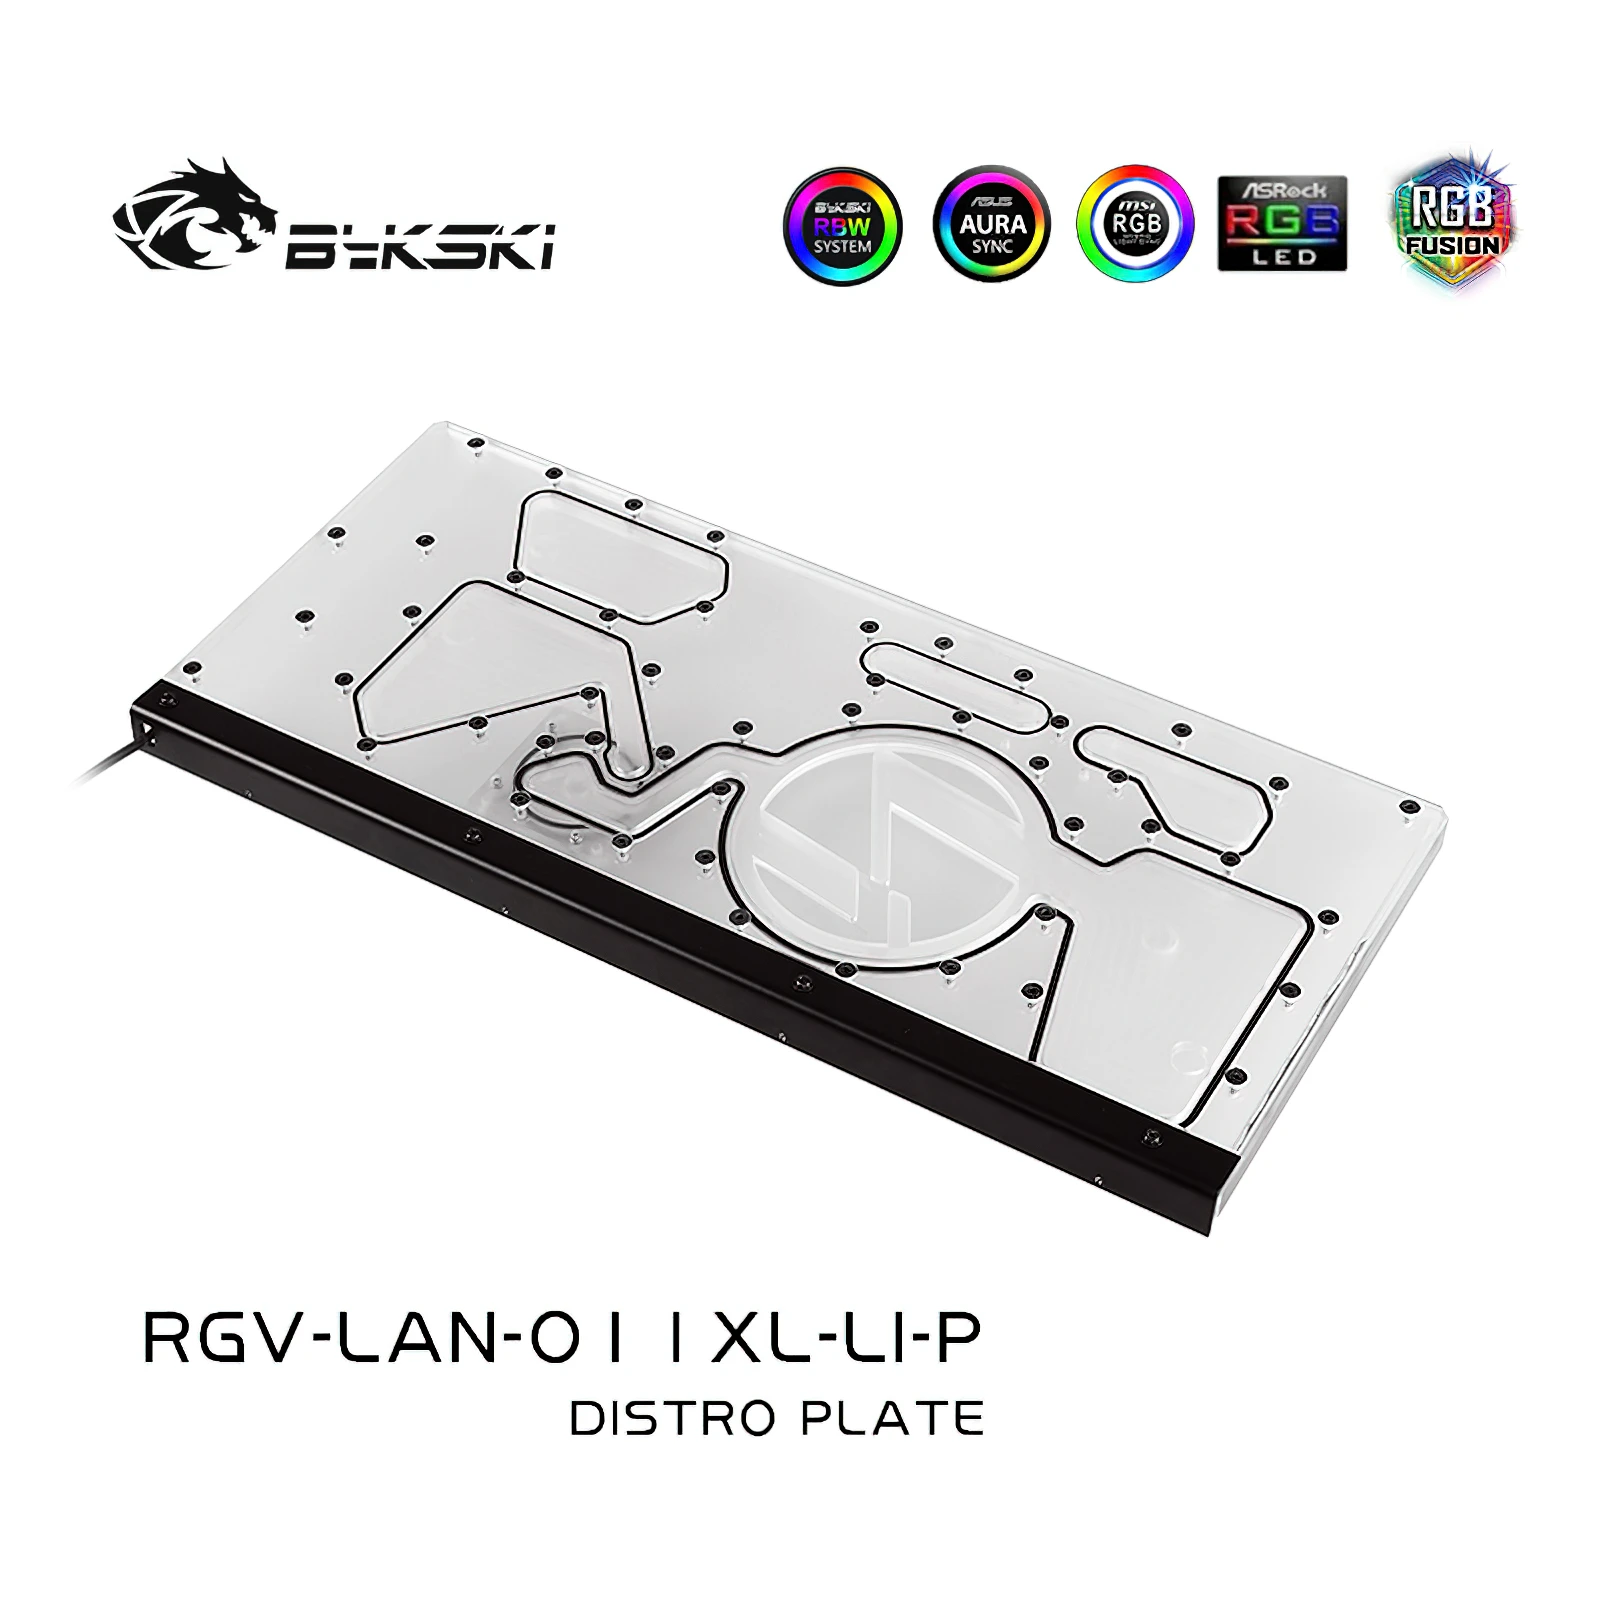 Bykski Distro Plate Reservior for Lianli PC-O11 Dynamic Chassis RGV-LAN-O11XL-LI-P